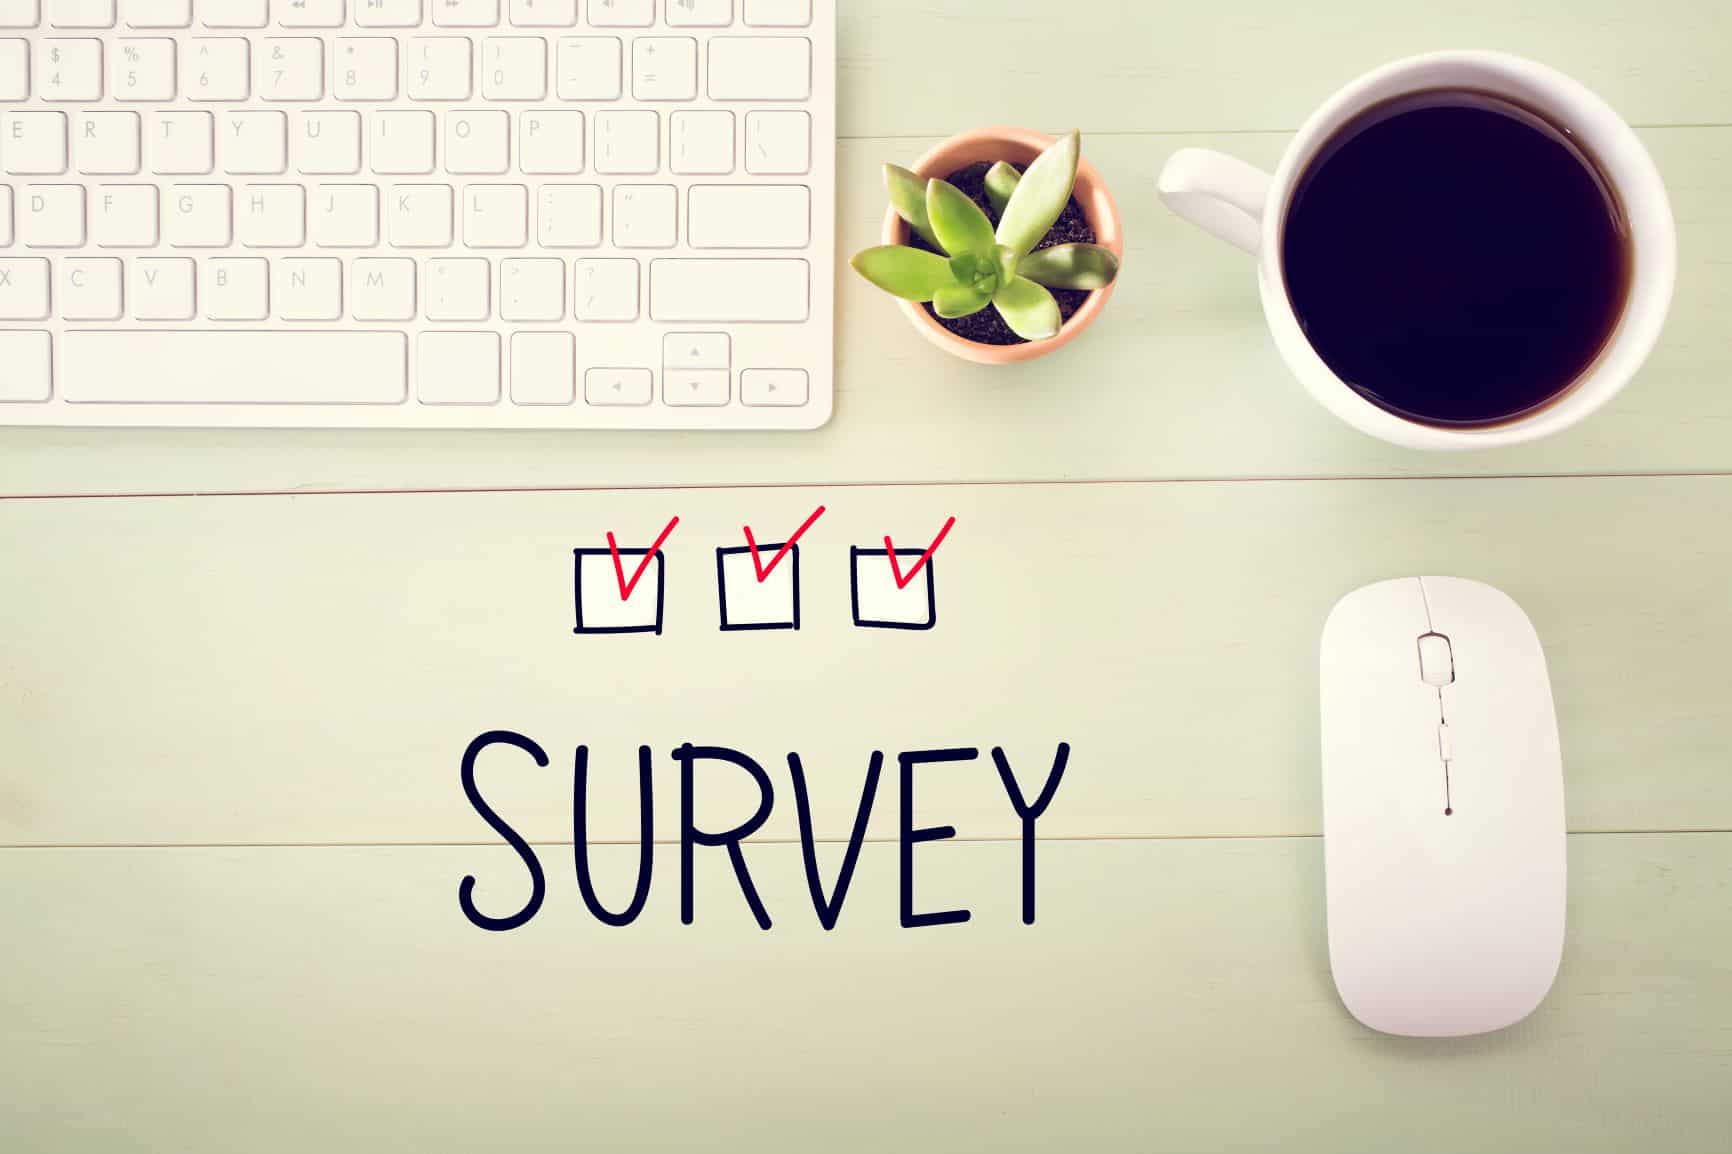 Student Survey 2021: Wo und wie kommt Werbung bei Studierenden an?